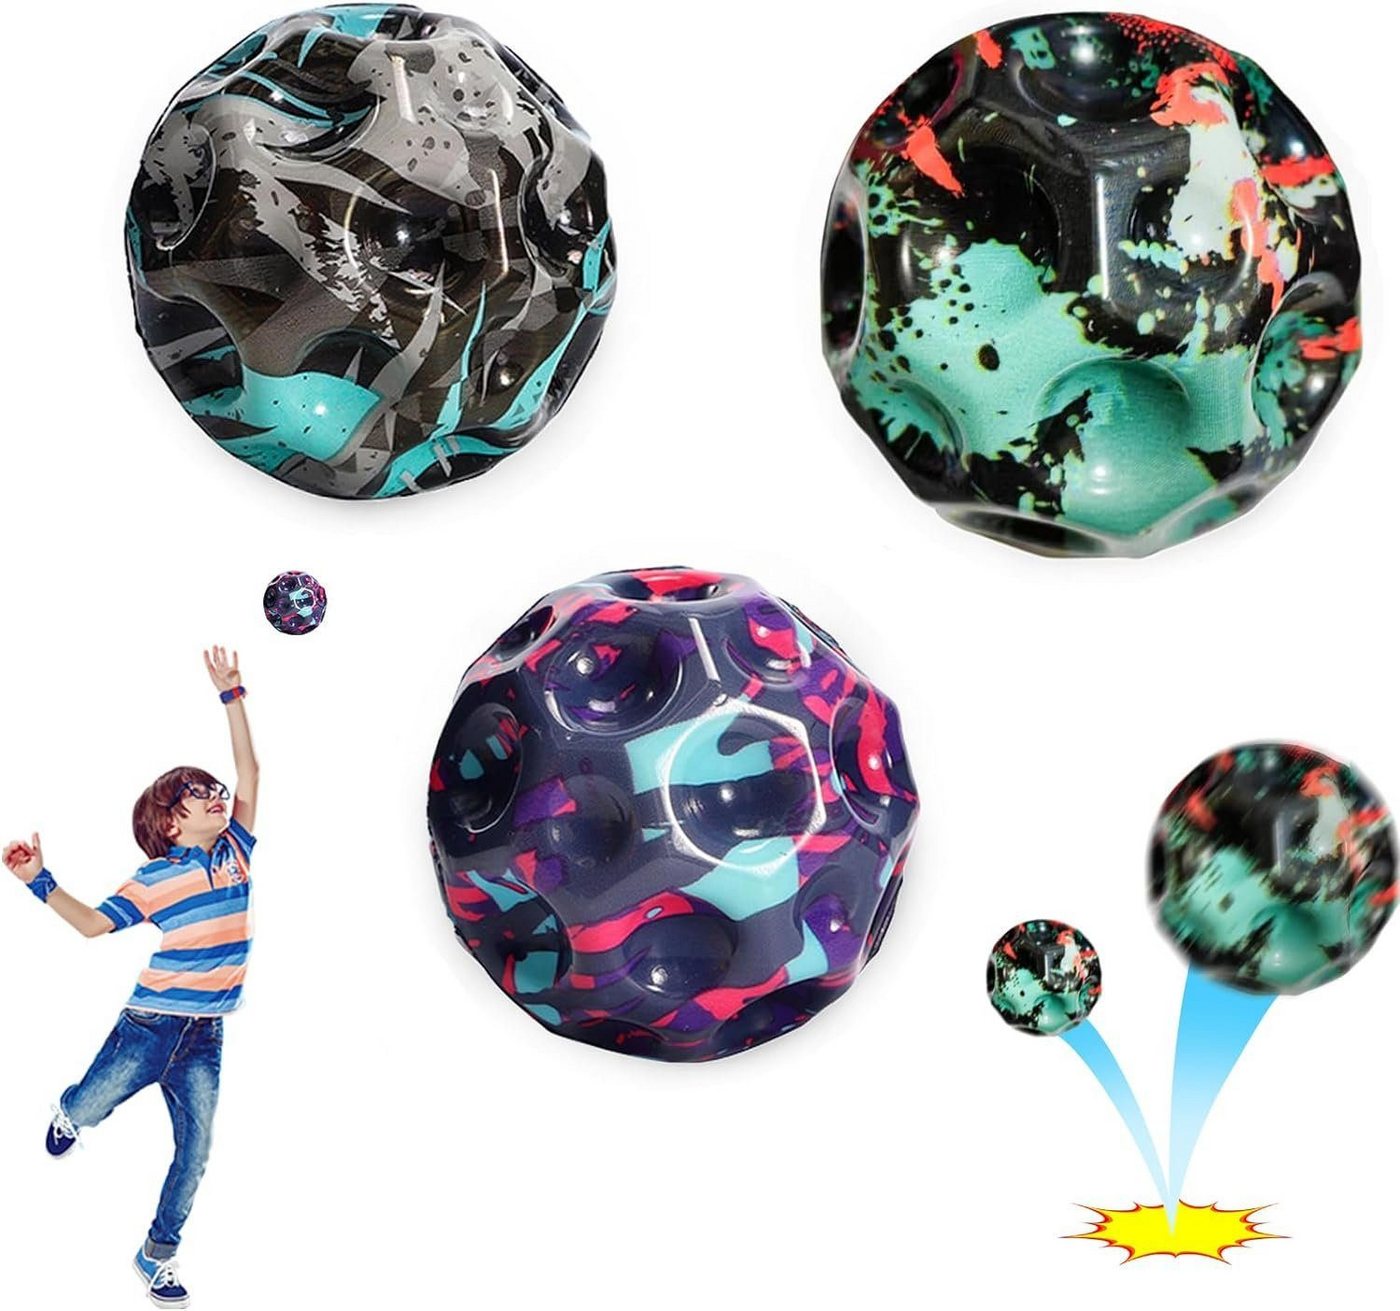 Fivejoy Spielball Bouncy Ball porösen Ball Eltern-Kind-Interaktion Stressabbau Spielzeug, 6-teiliges Set mit hüpfenden Bällen, Mondbällen von Fivejoy